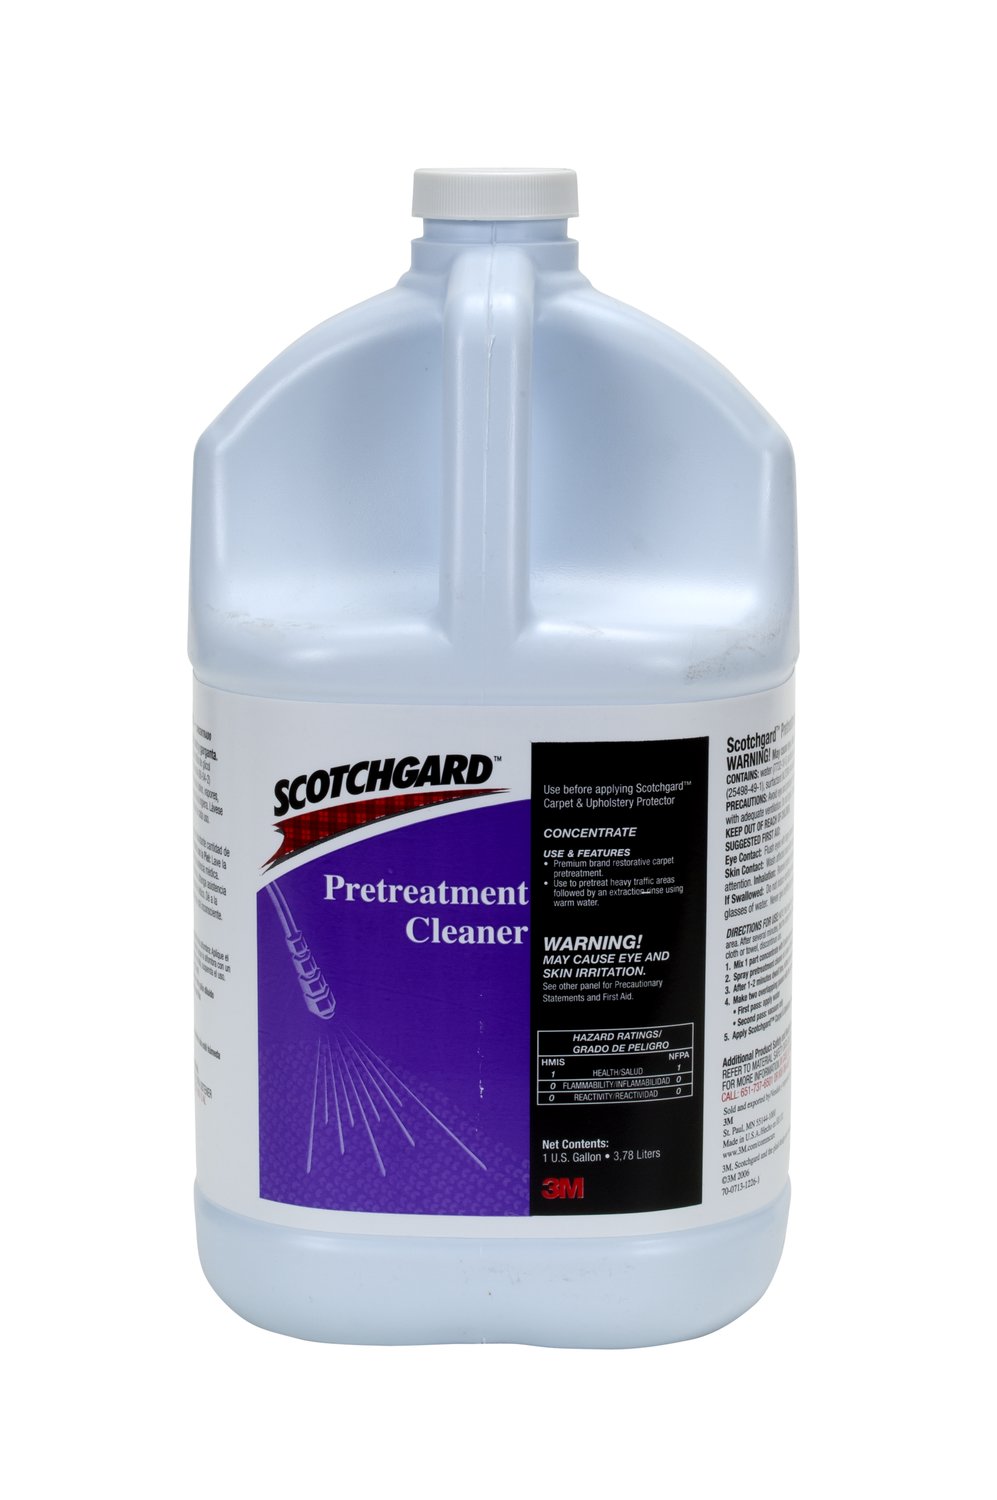 7100122464 - 3M Scotchgard Pretreatment Cleaner Concentrate, 1 Gallon Per Bottle, 4
Bottles/Case